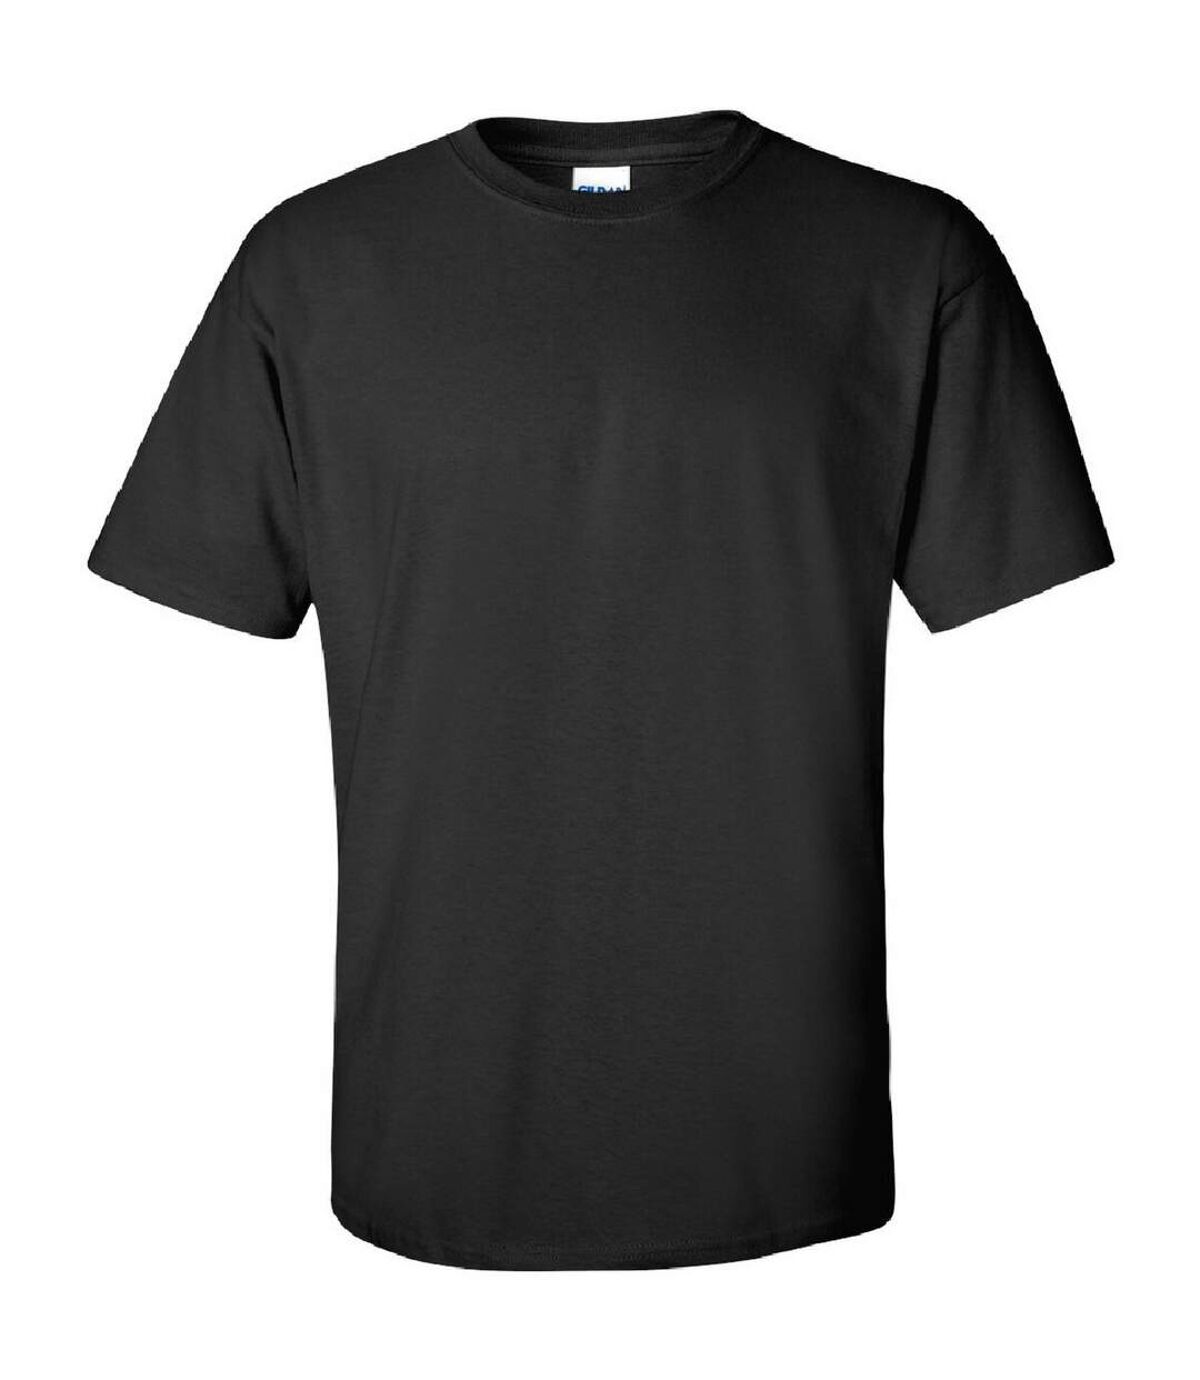 Gildan - T-shirt à manches courtes - Homme (Noir) - UTBC475